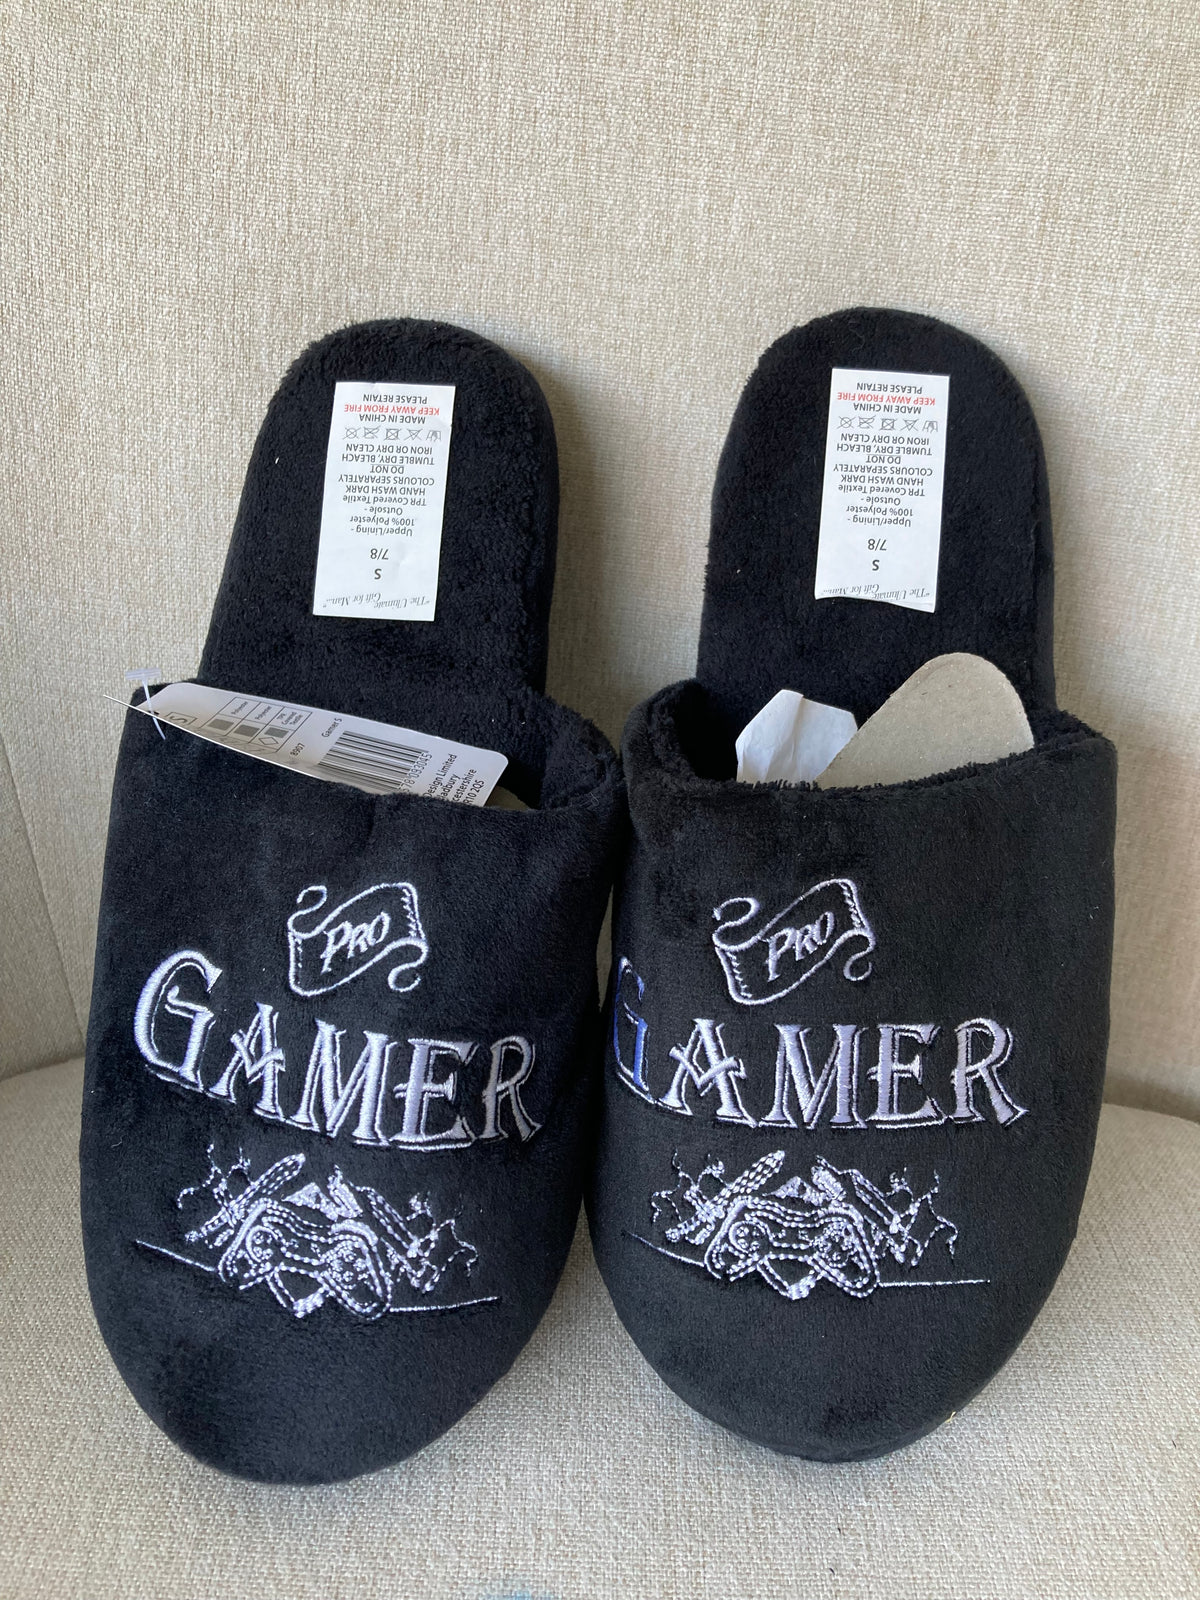 Pro Gamer slippers